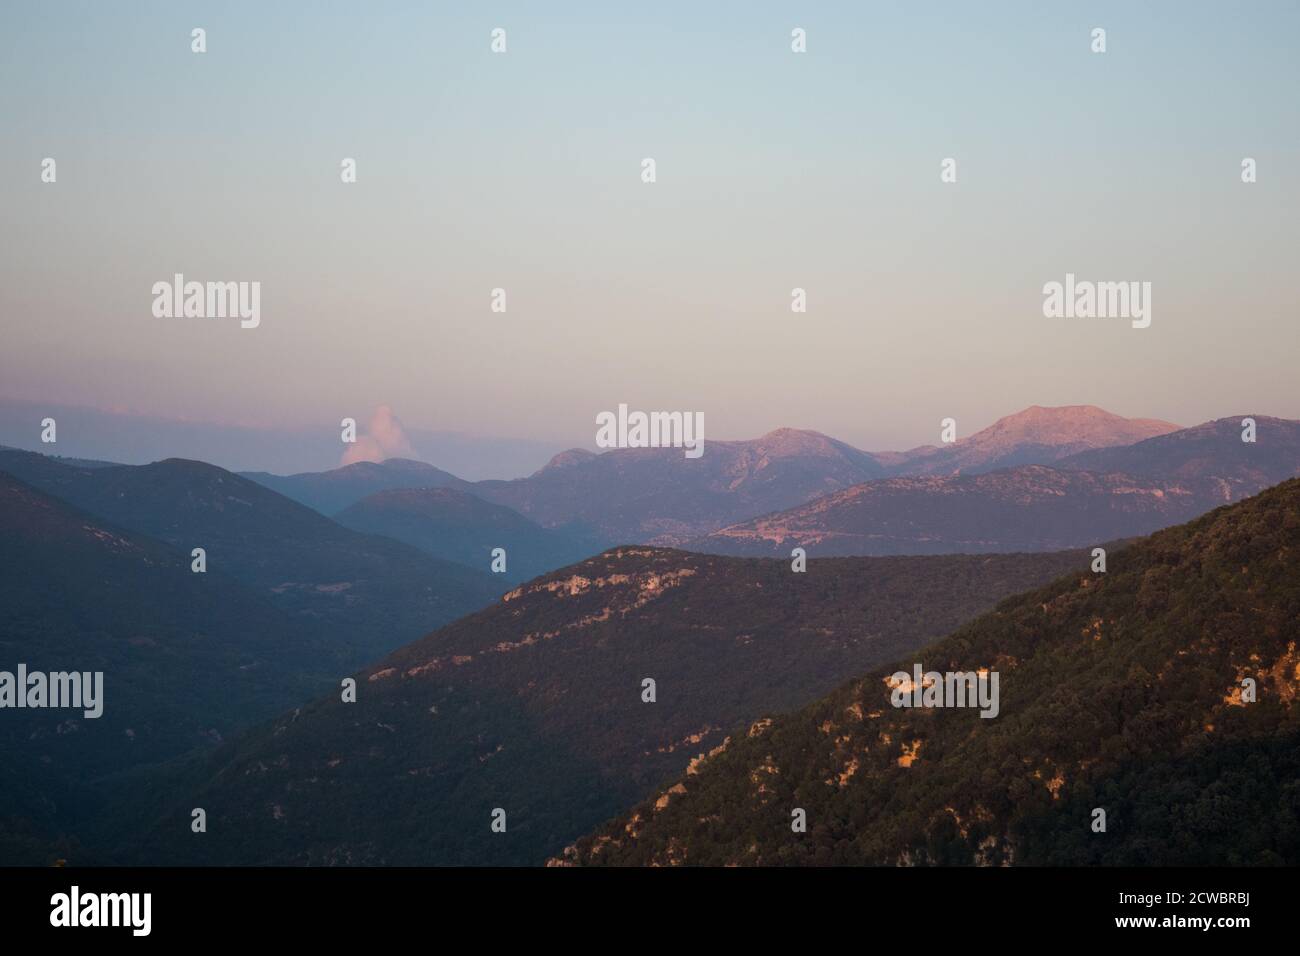 Greek Sunset over Mountain Range Stock Photo